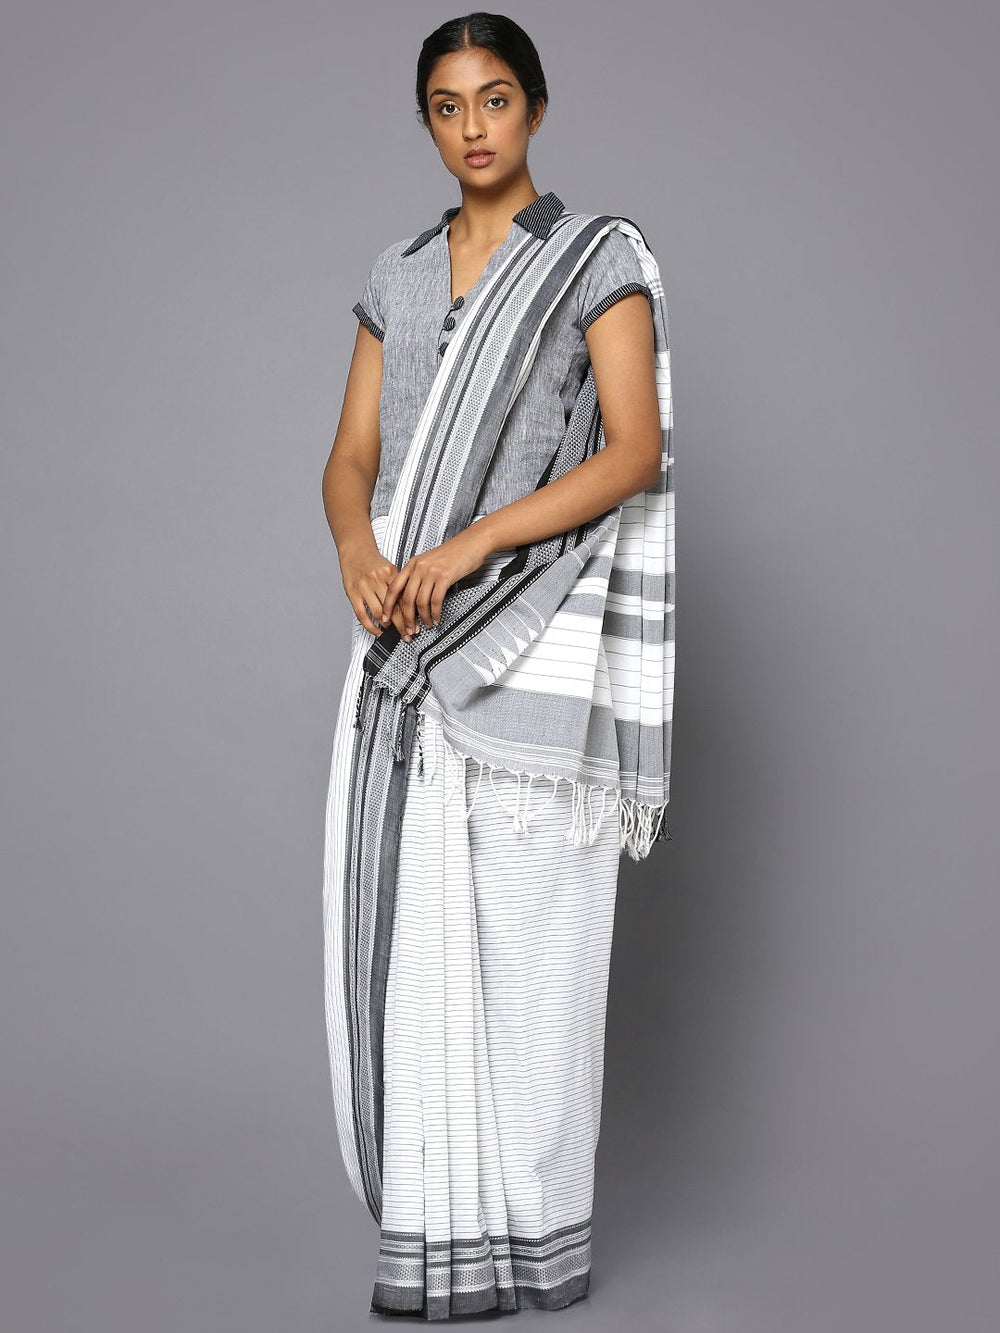 Grey striped white ilkal cotton saree